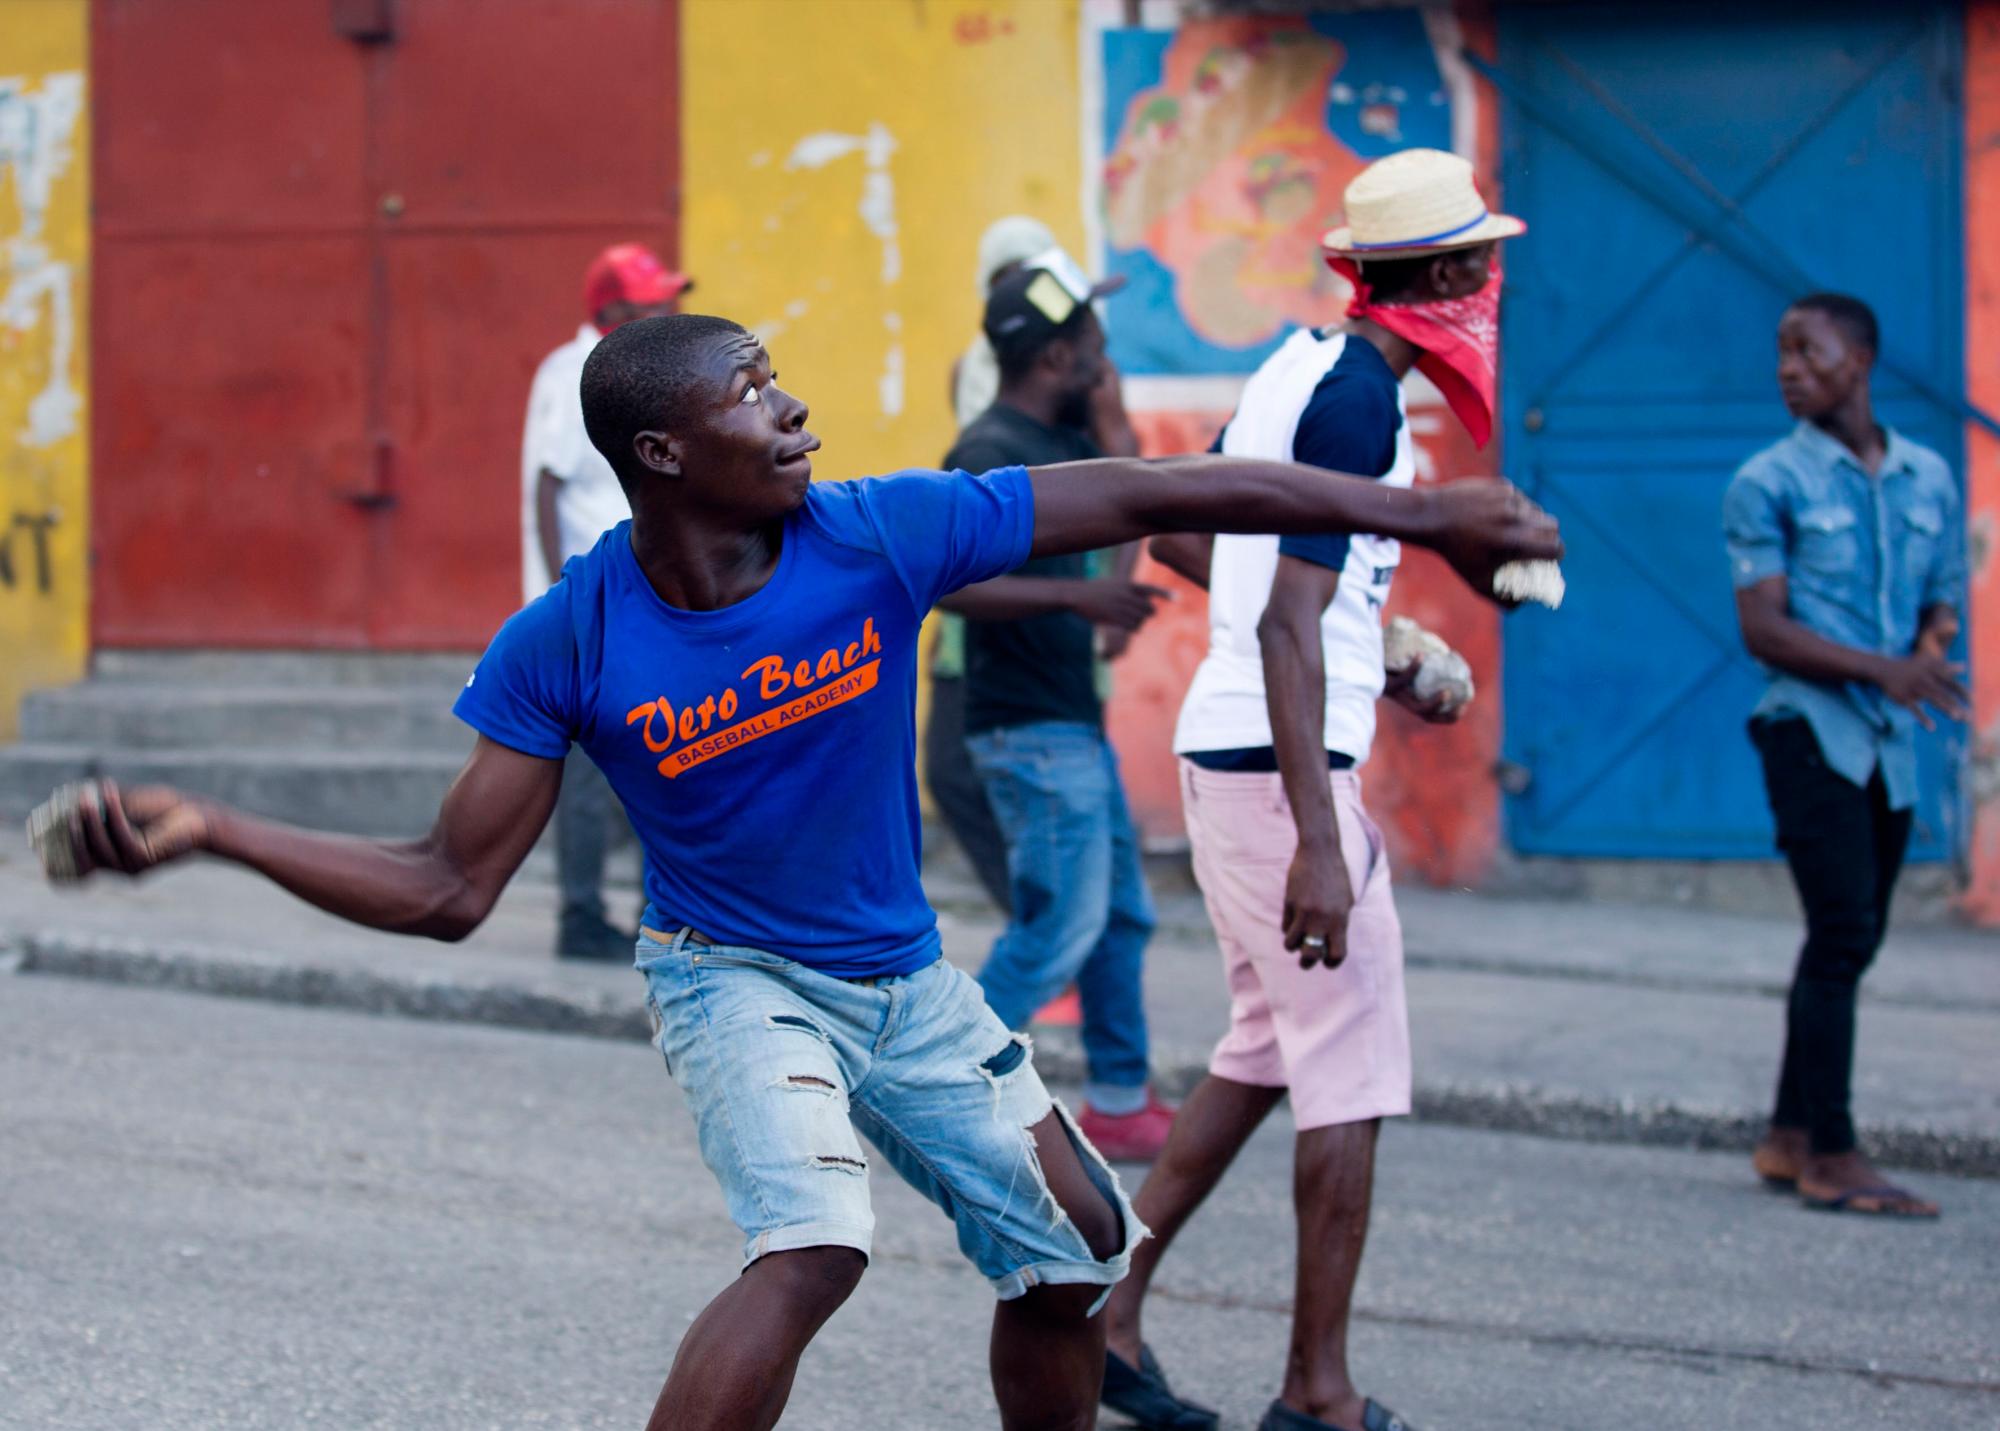 Los manifestantes arrojan piedras a los vecinos del vecindario durante una protesta para exigir la renuncia del presidente de Haití, Jovenel Moise, en el 216 aniversario de la Batalla de Vertieres en Puerto Príncipe, Haití, el lunes 18 de noviembre de 2019. Al menos cuatro personas fueron baleadas y herido durante una pequeña protesta en la capital de Haití después de un discurso del presidente asediado Moise. Un periodista local, un oficial de policía y dos manifestantes fueron trasladados rápidamente con heridas de bala aparentes.